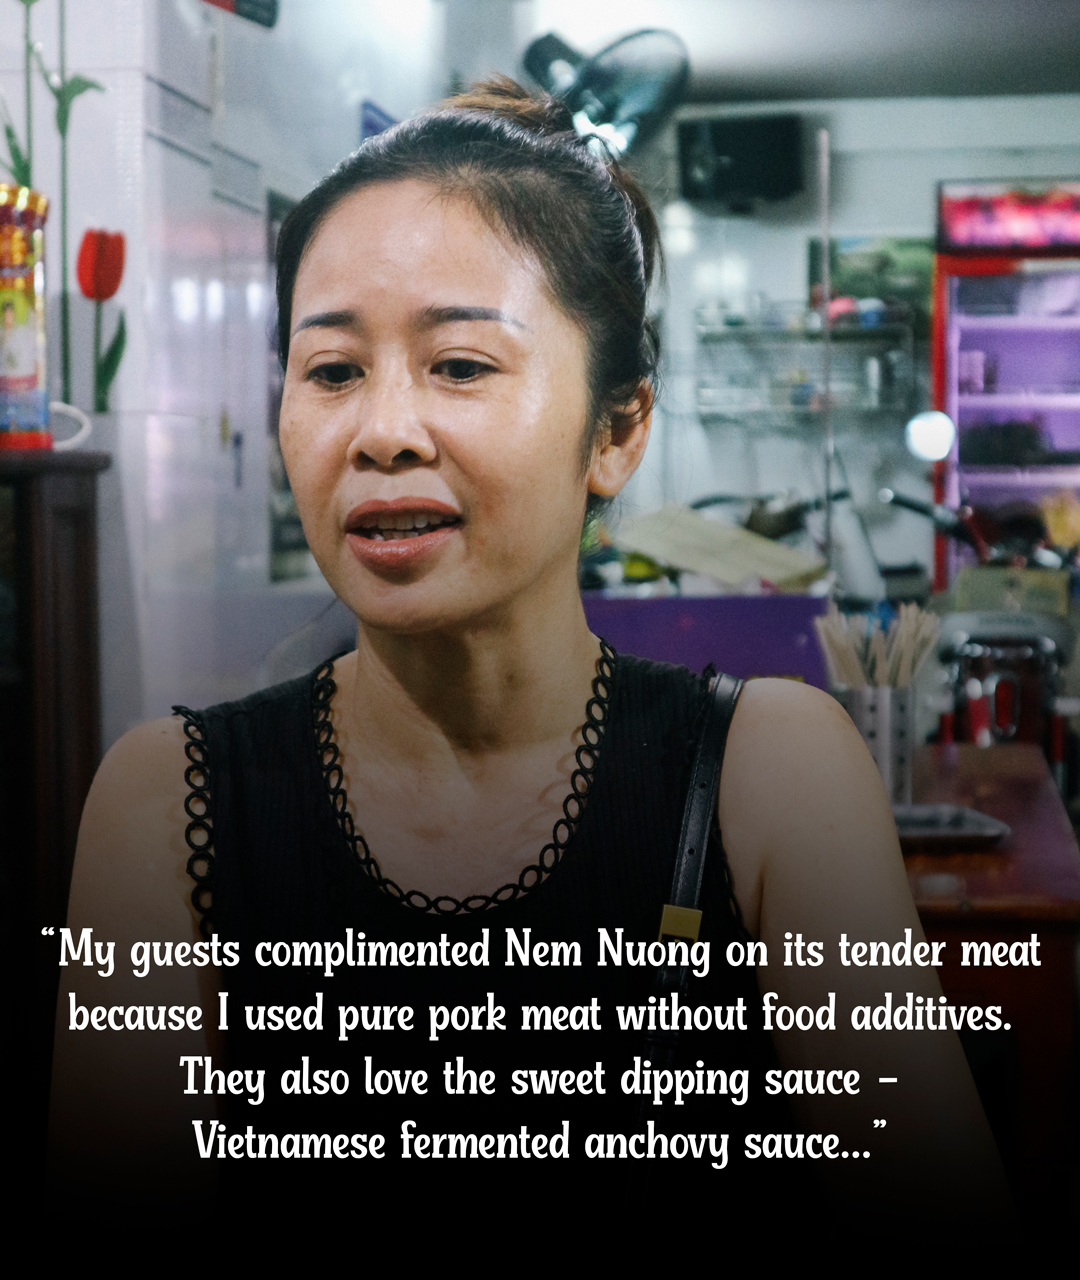 The owner of Nem Nuong Hai Van